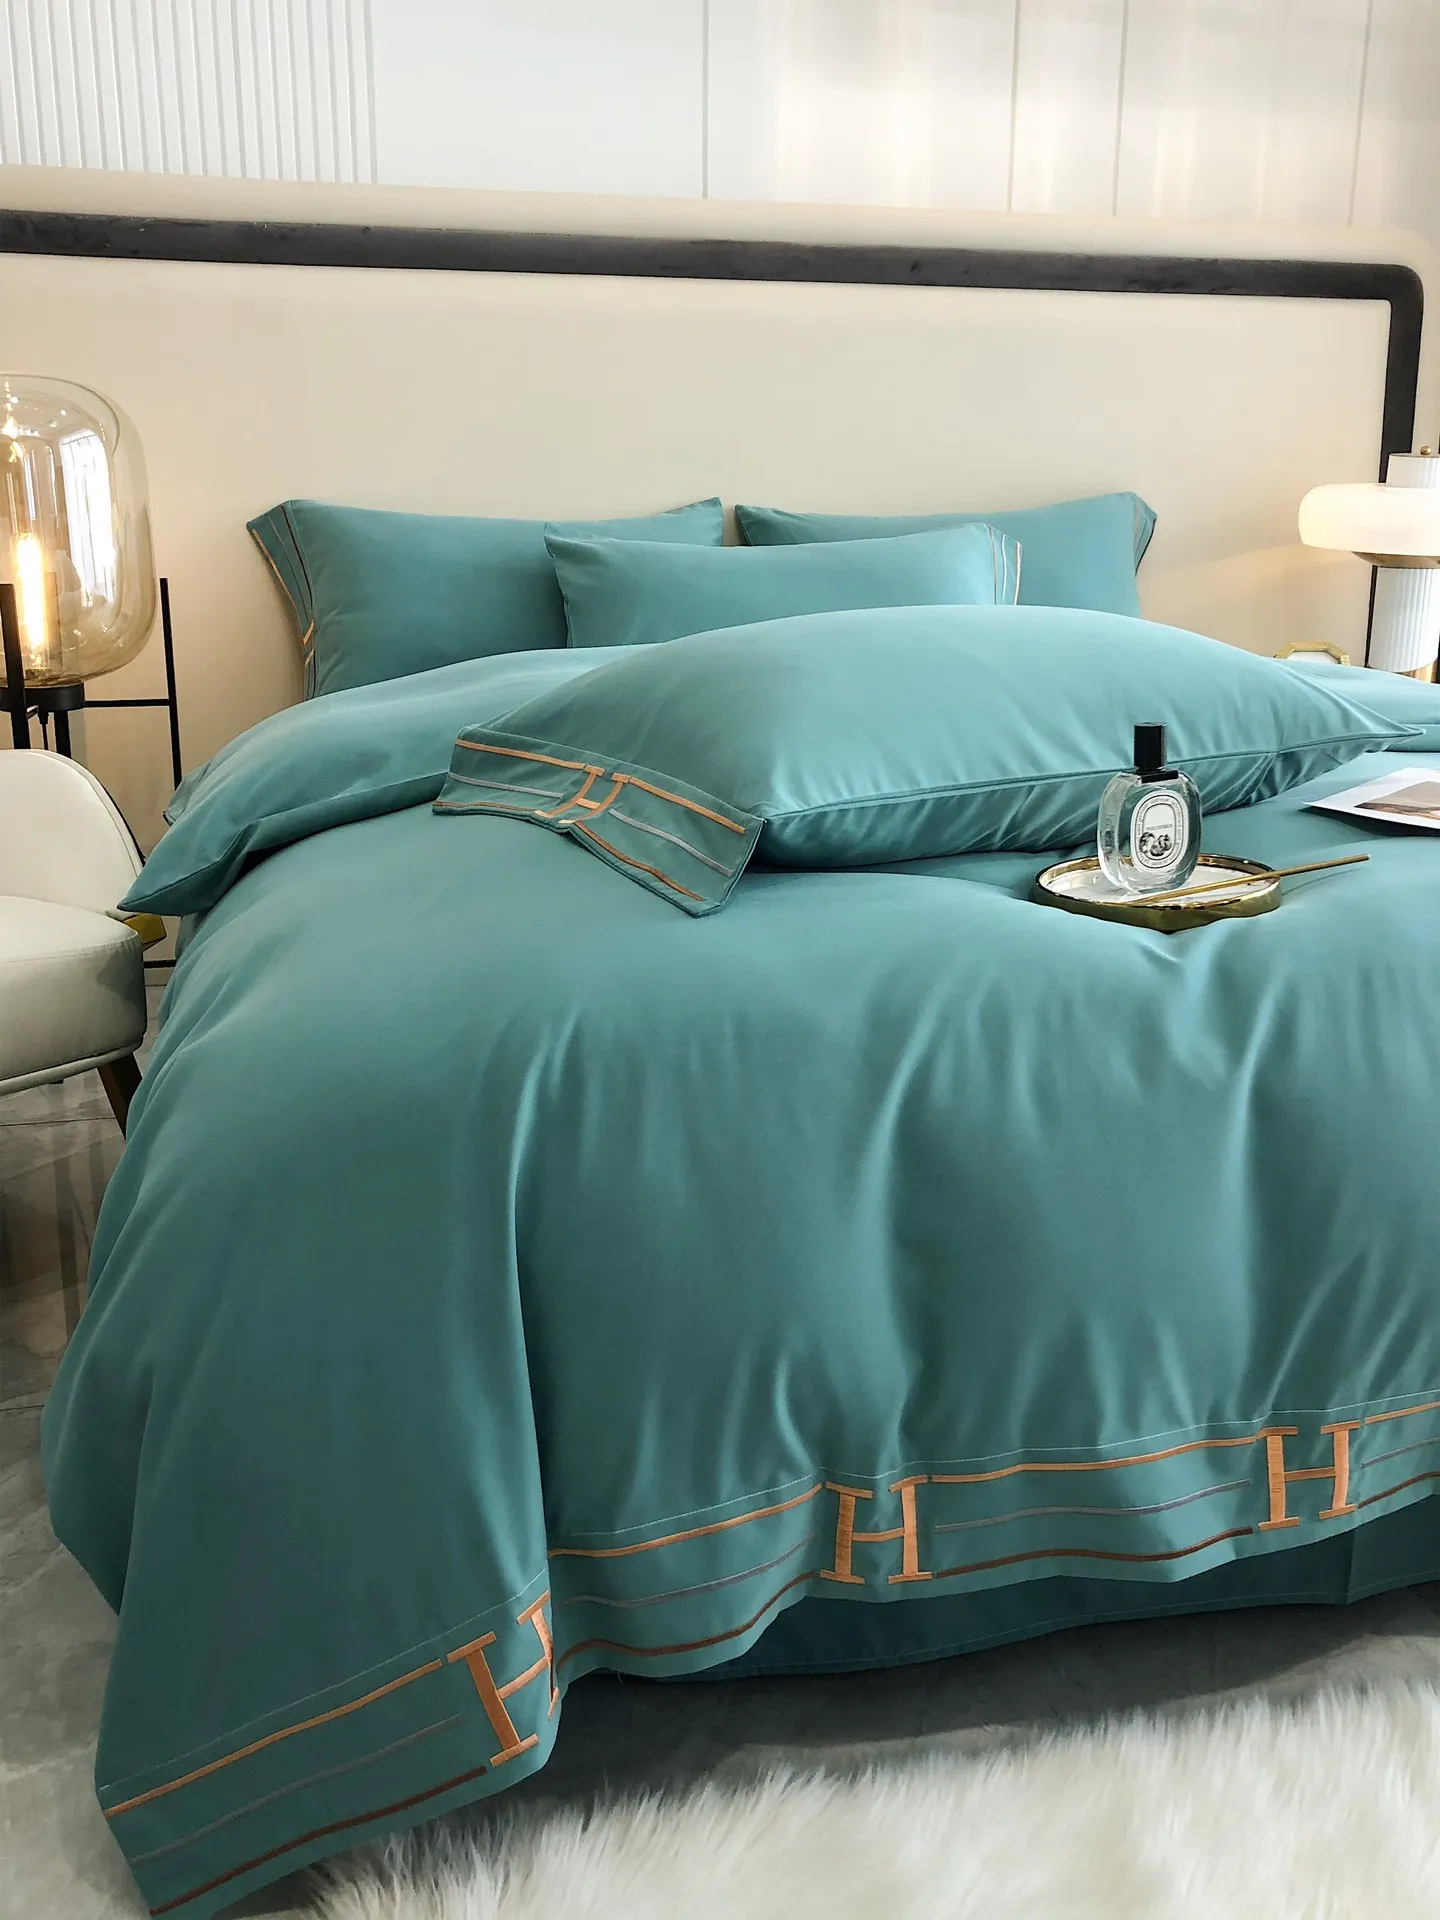 Роскошный дизайн постельных принадлежностей Высококачественные дни Шелковый хлопчатобумажный элегантность цветов Мягкая кровать листовой комфортный одеял крышка с вышивкой